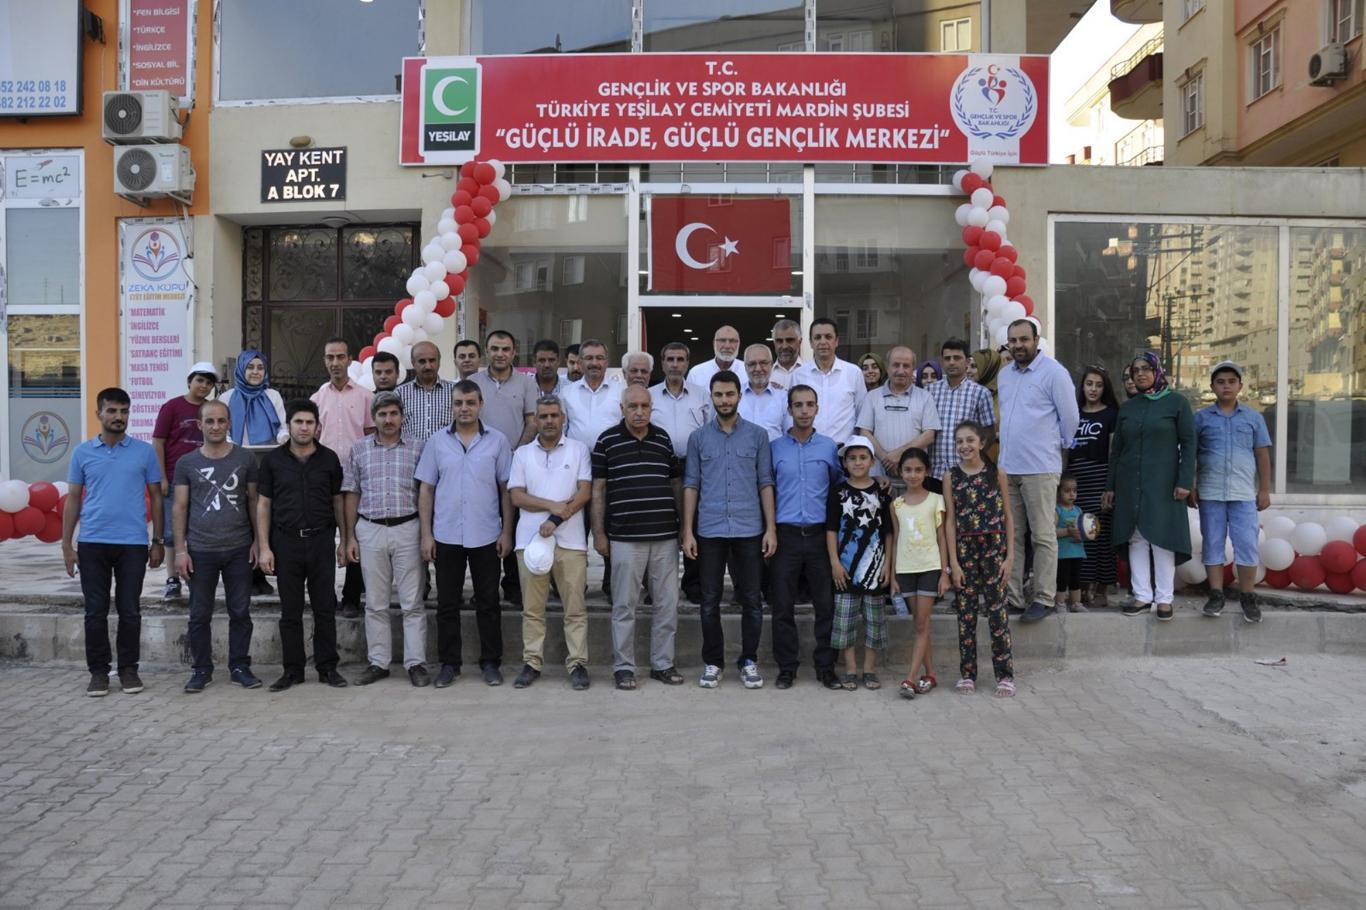 Mardin Yeşilay’ın “Gençlik Merkezi” açıldı